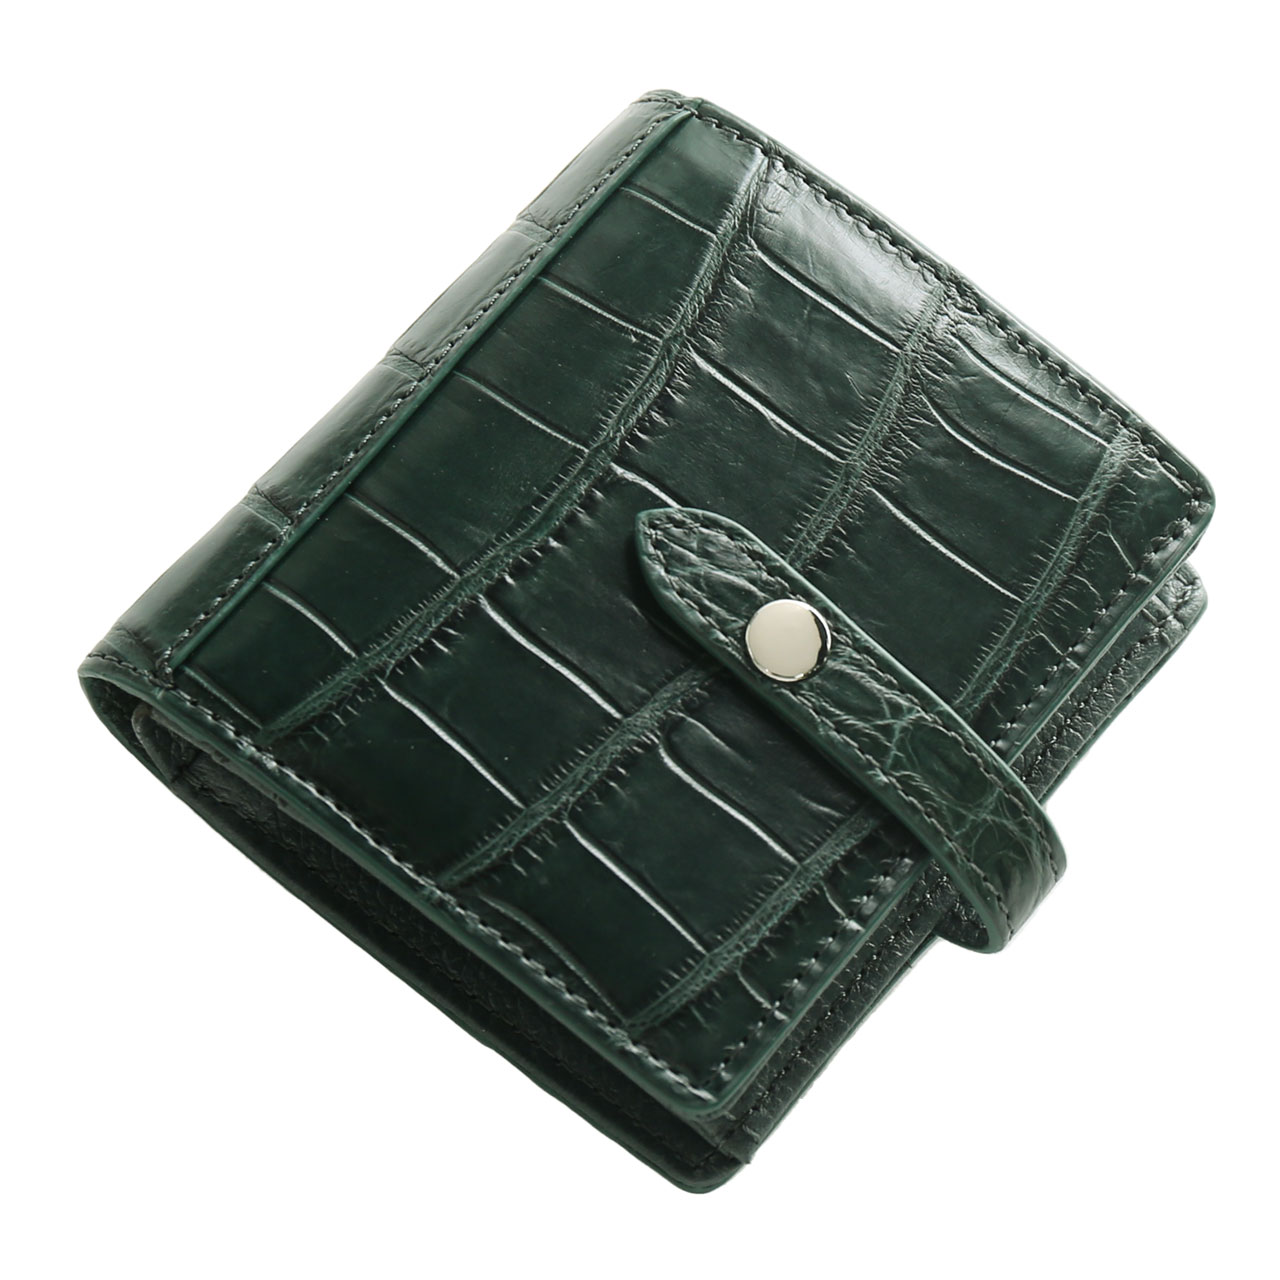 クロコダイル 二つ折り 財布 レディース マット 加工 ベルト付き ボックス型小銭入れ カード入れ 多い 多機能 折り財布 コンパクト  ミニ財布(06001711r)